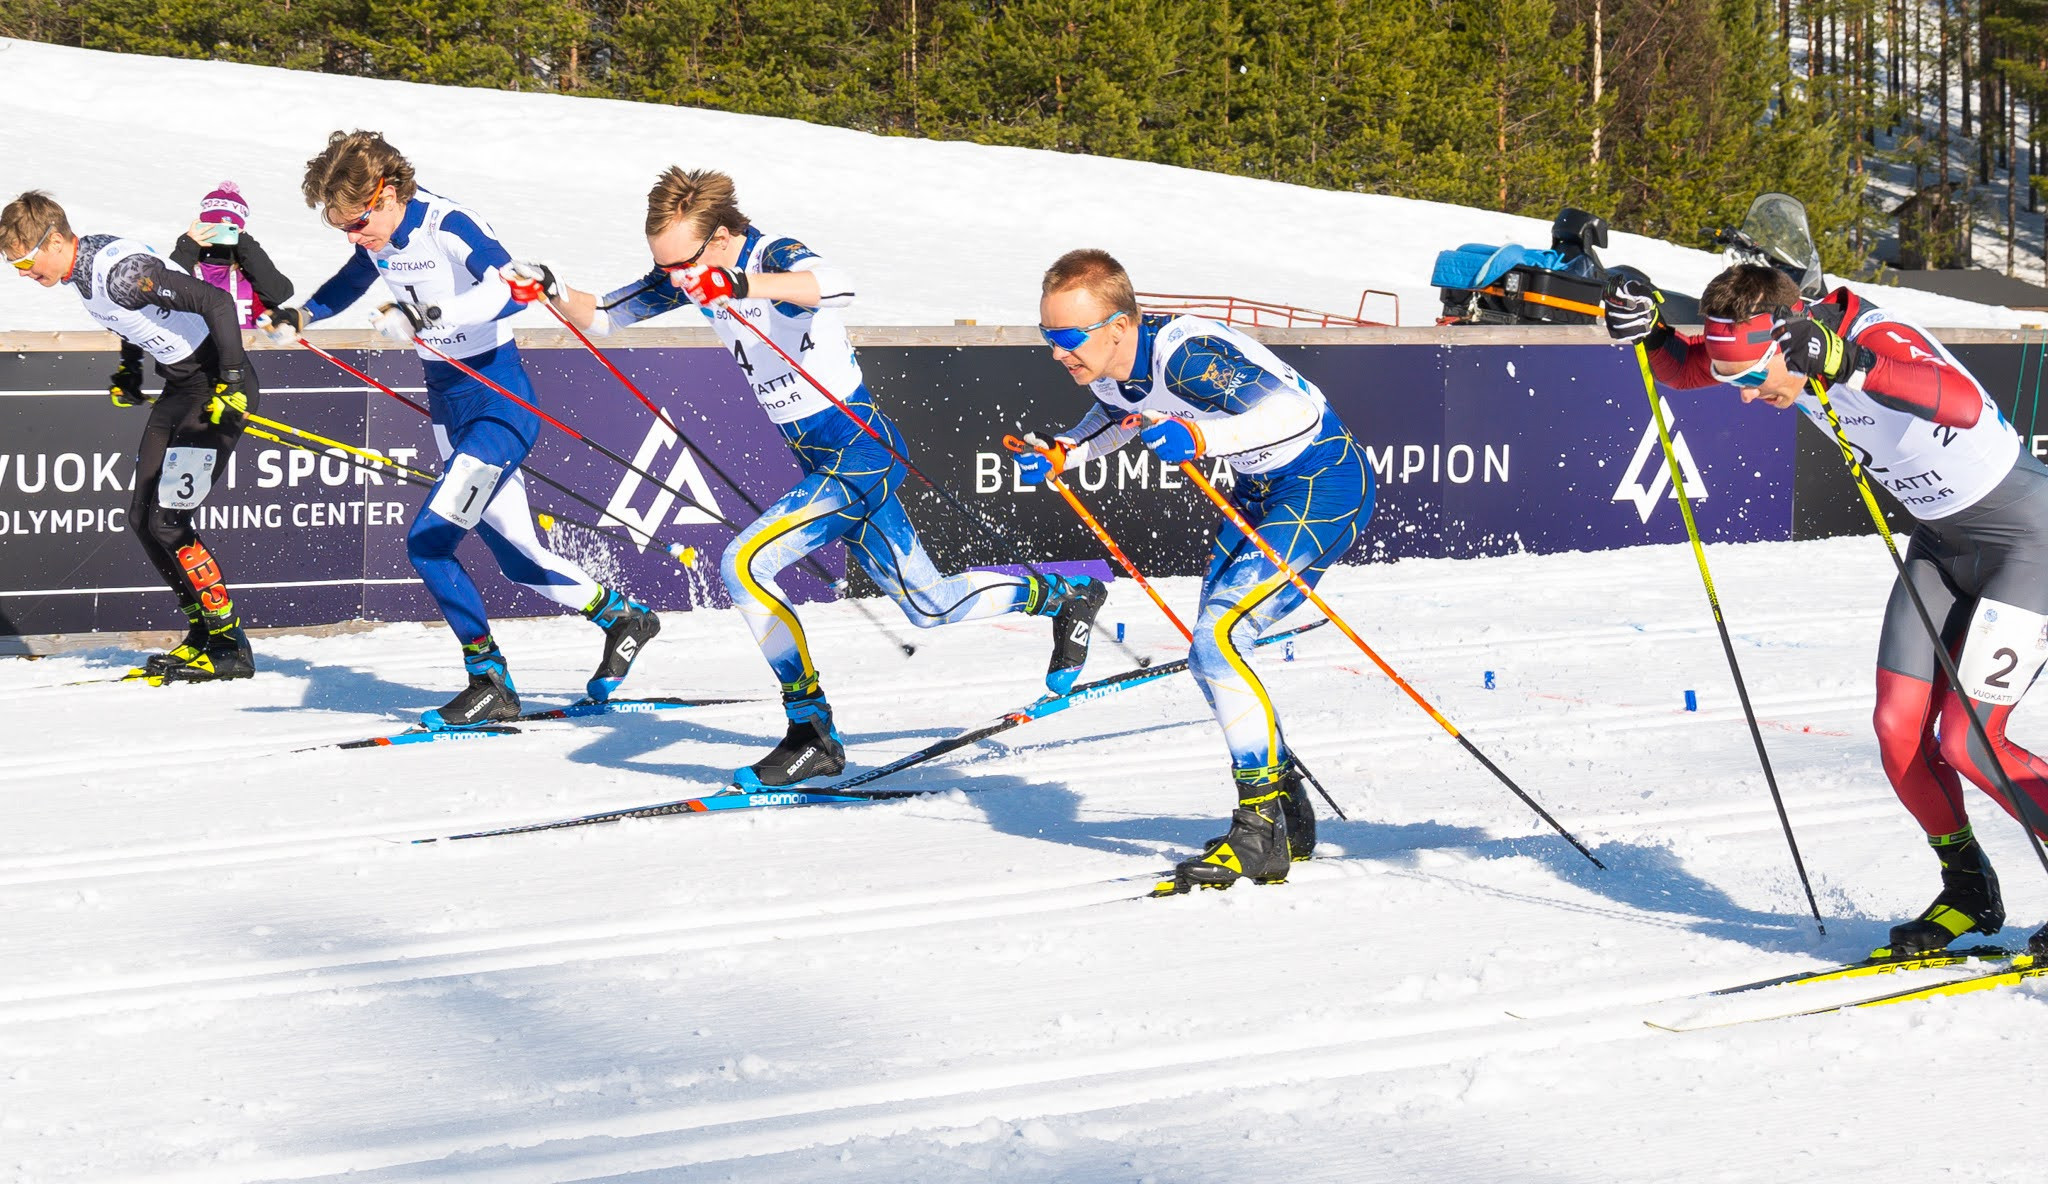 Cross-country skiing sprints were held over 1.1km today at the Vuokatti Sport Biathlon Stadium ©Justus Pietikäinen/EYOF 2022 Vuokatti